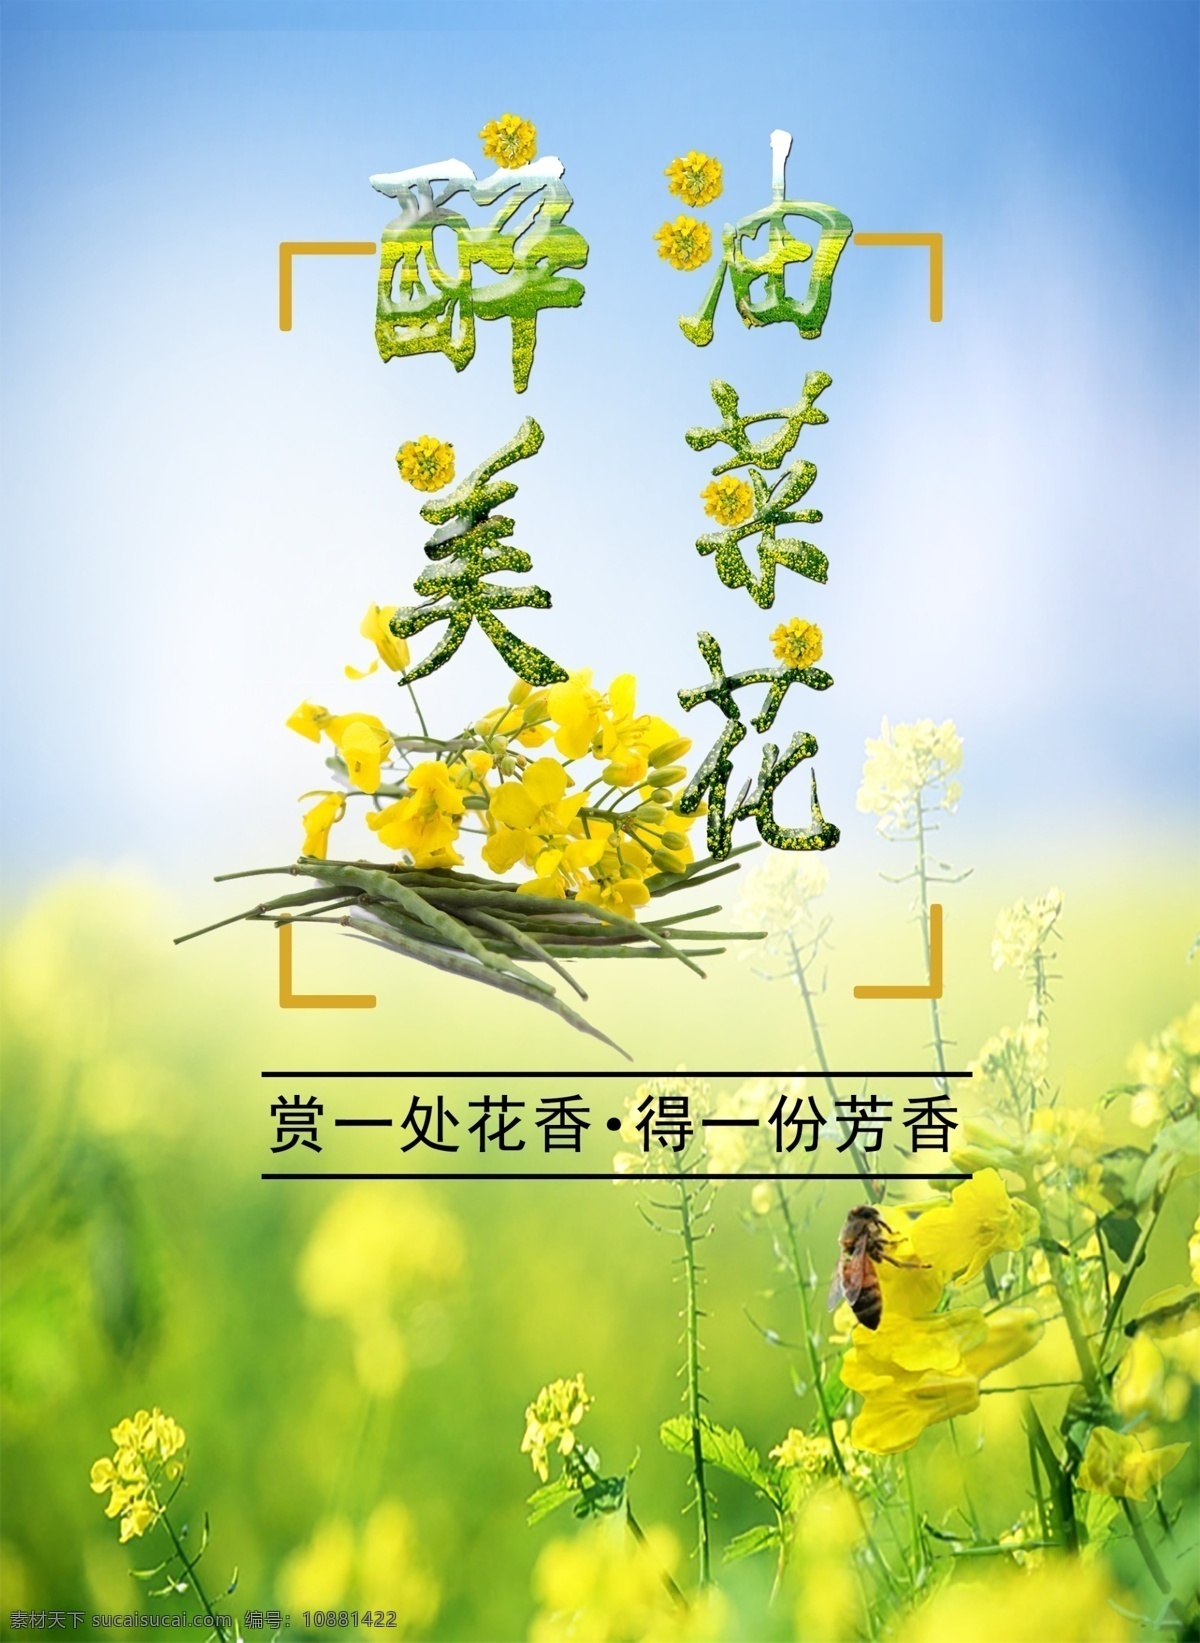 醉 美 油菜花 清新 宣传海报 自然 展板 蓝色 黄色 海报 菜花